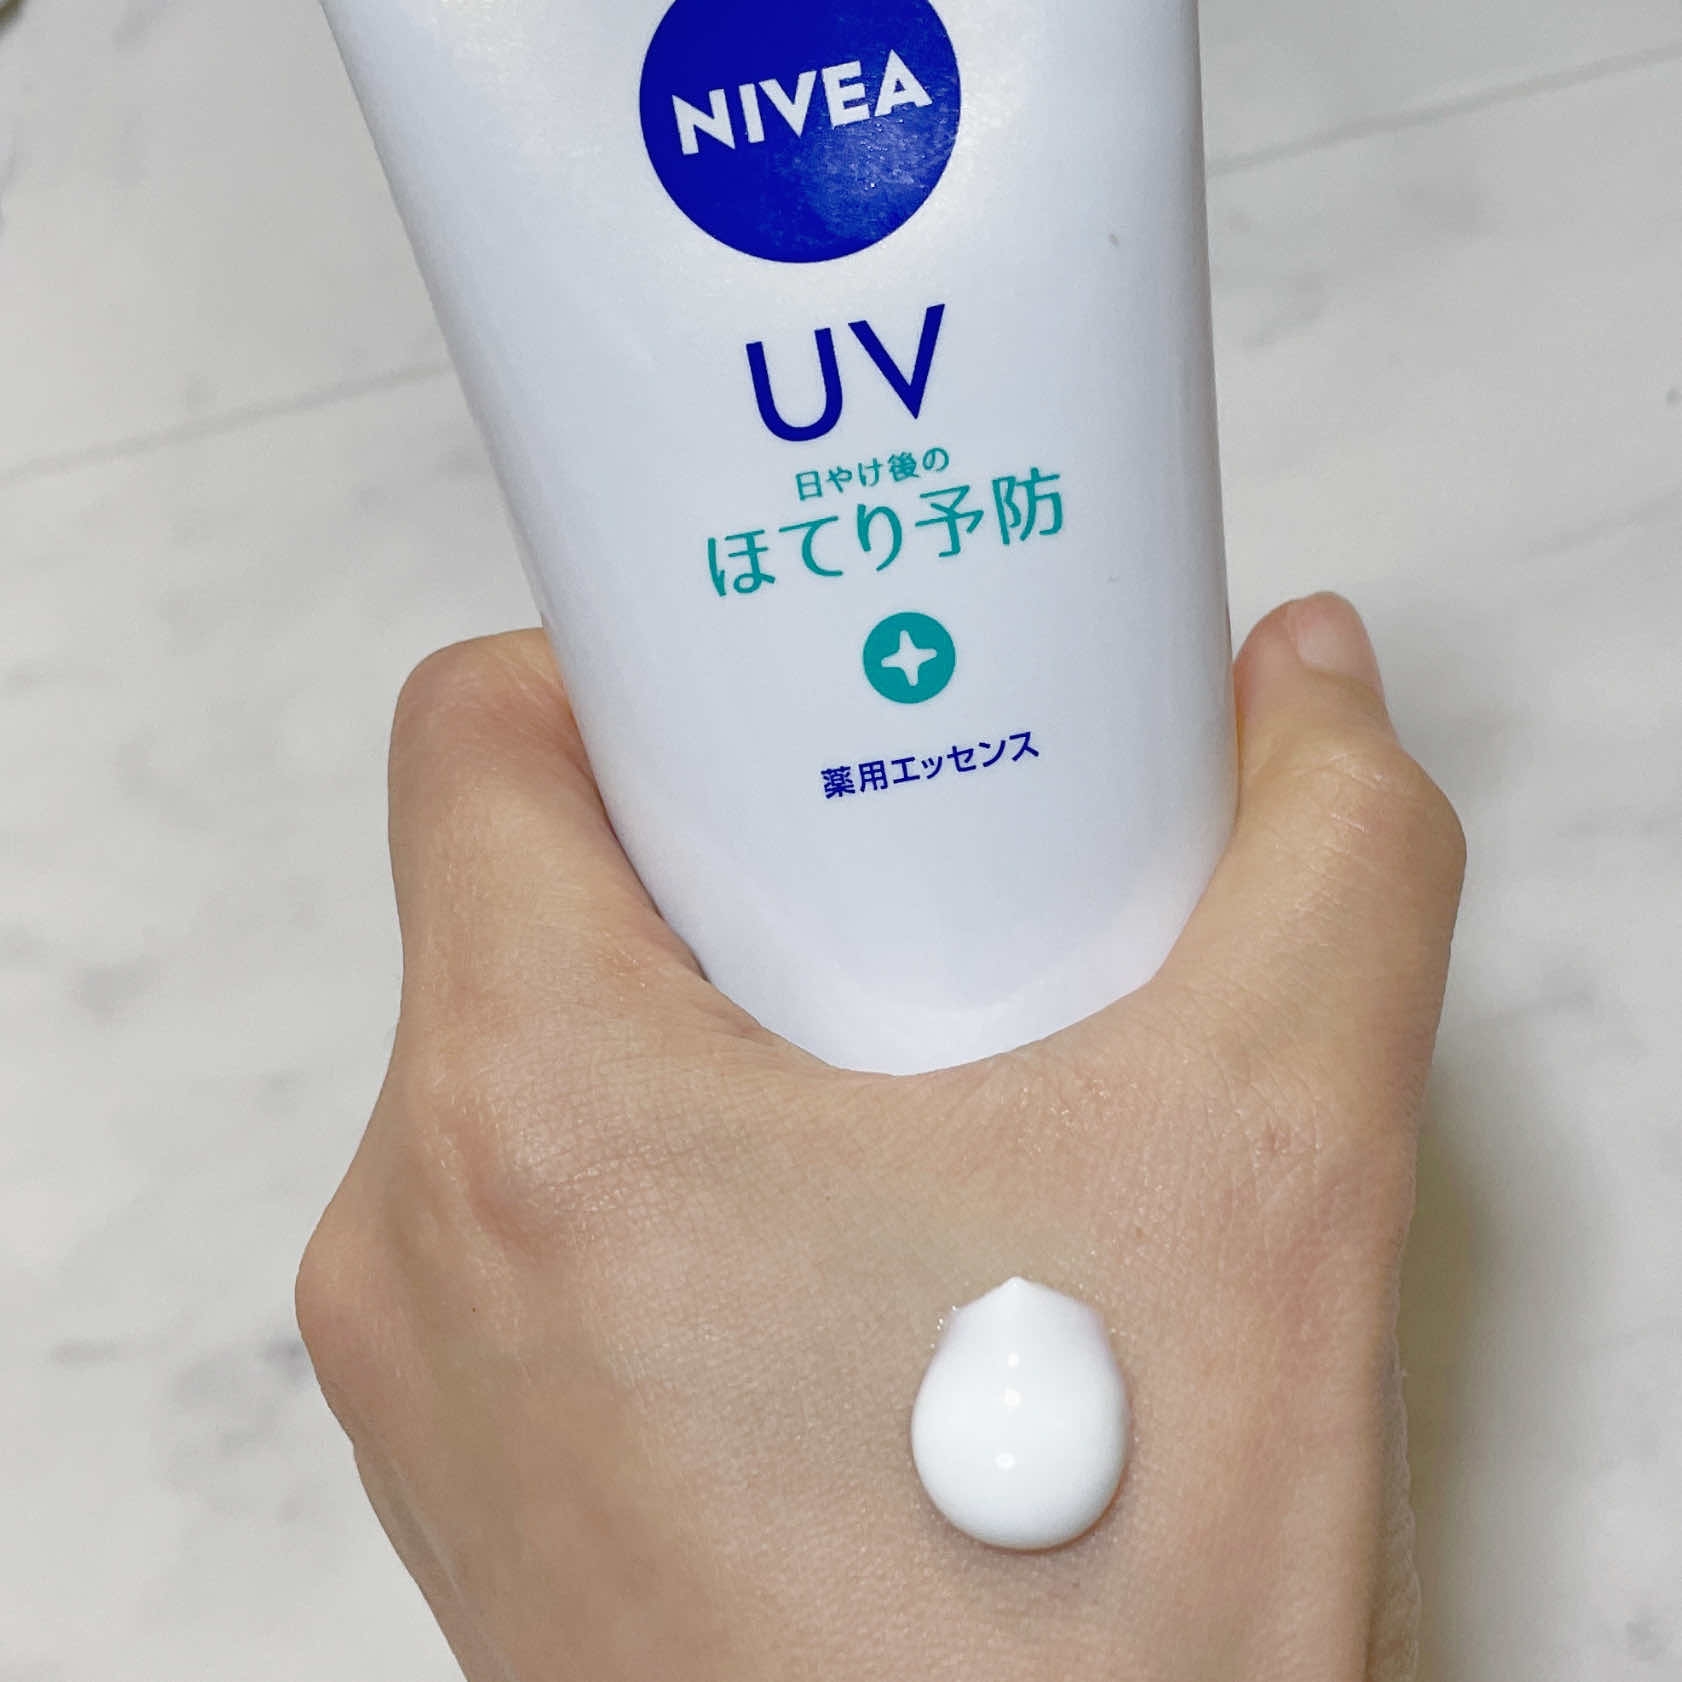 NIVEA(ニベア) UV 薬用エッセンスの良い点・メリットに関するなゆさんの口コミ画像2